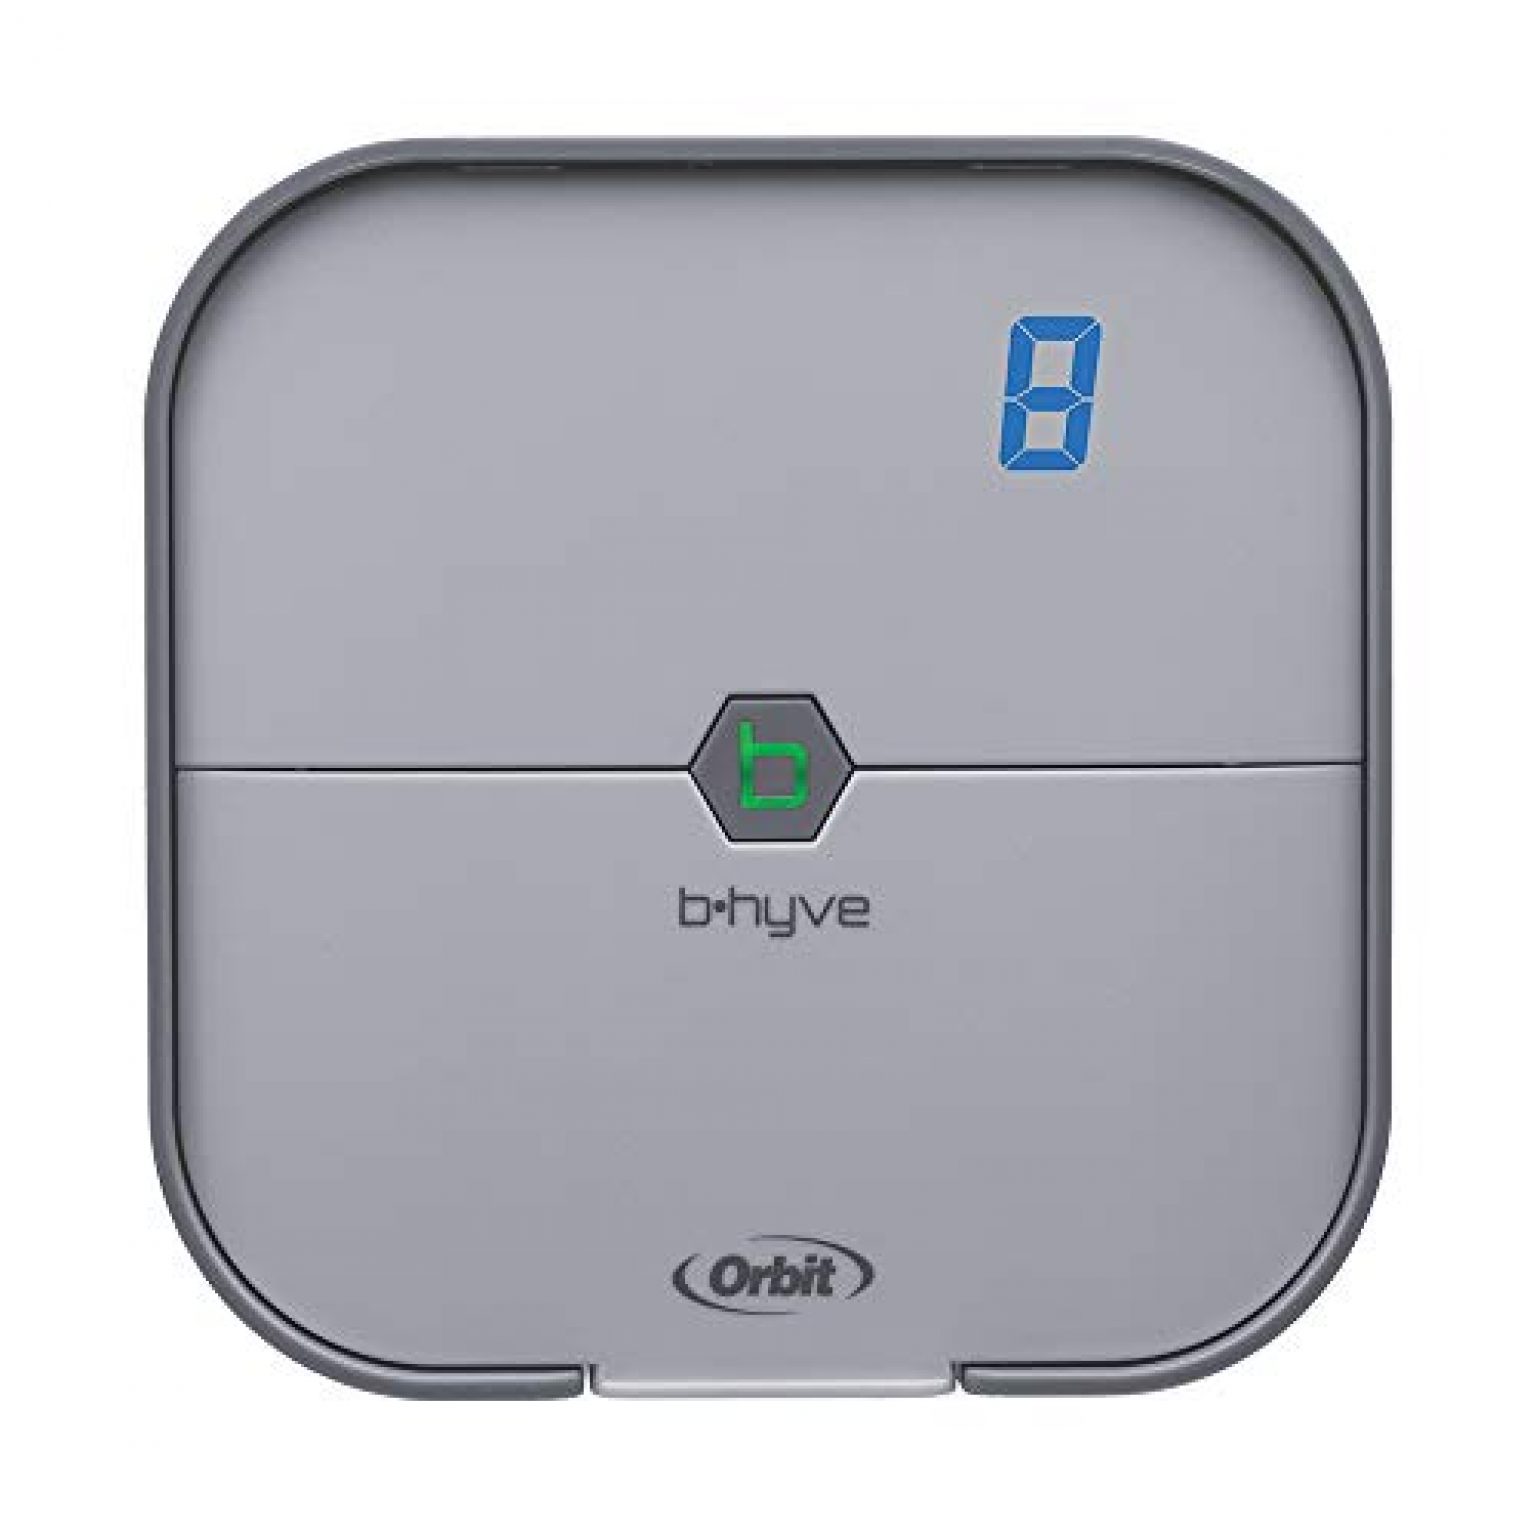 orbit-b-hyve-8-zone-smart-indoor-sprinkler-controller-altech